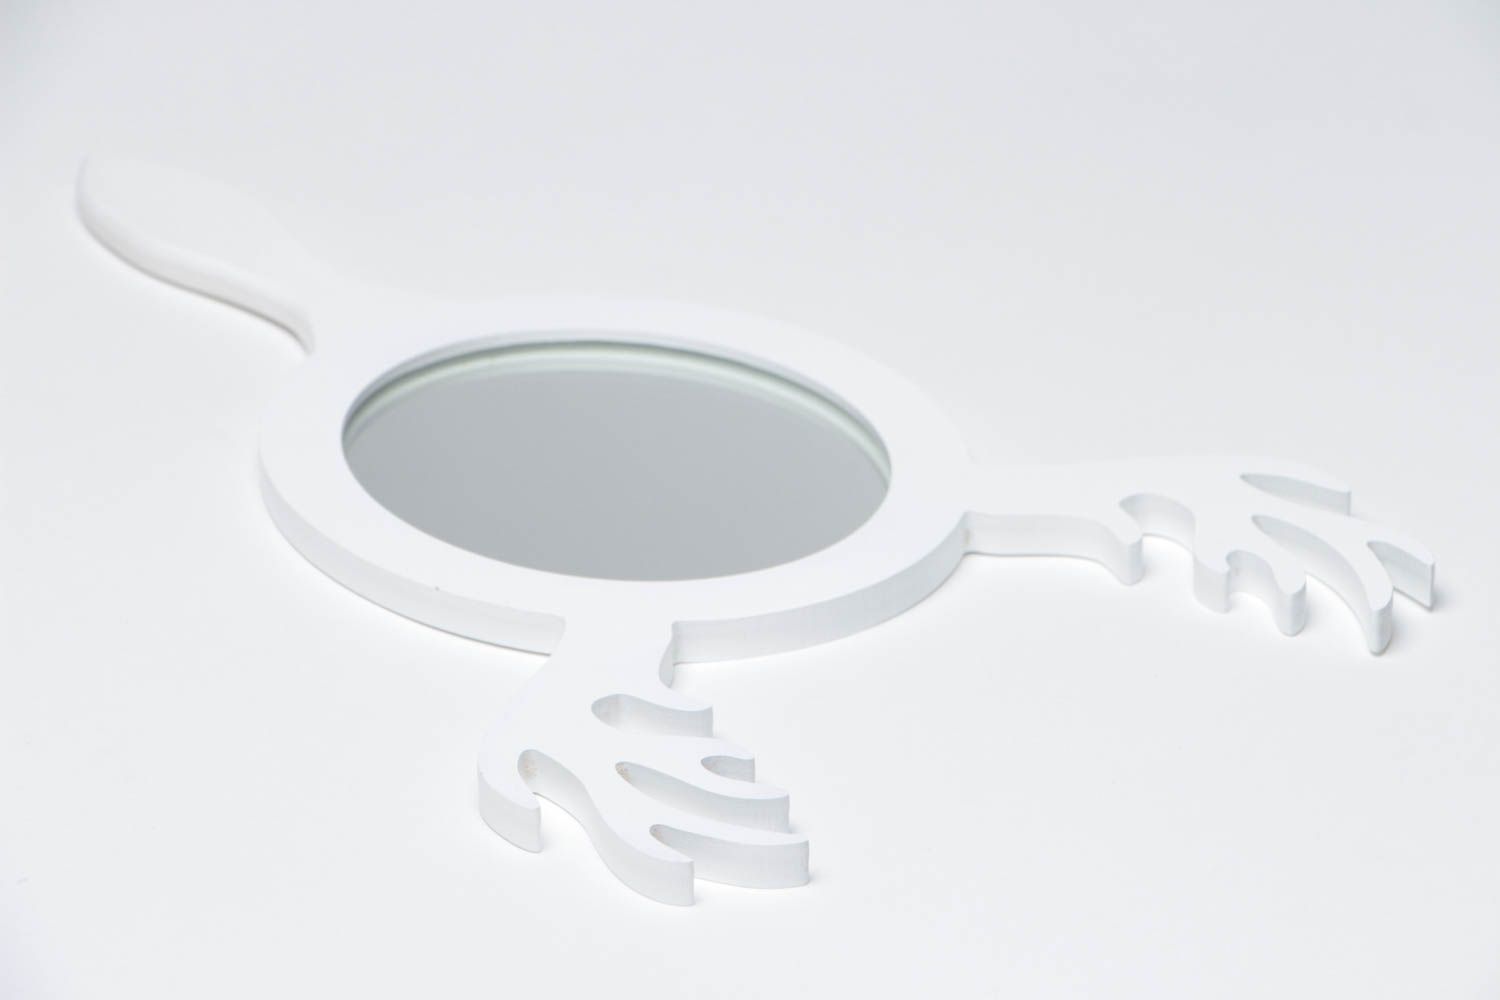 Handmade weißer Spiegel aus MDF Platte für Toilettentisch mit Gestäuden schön foto 3